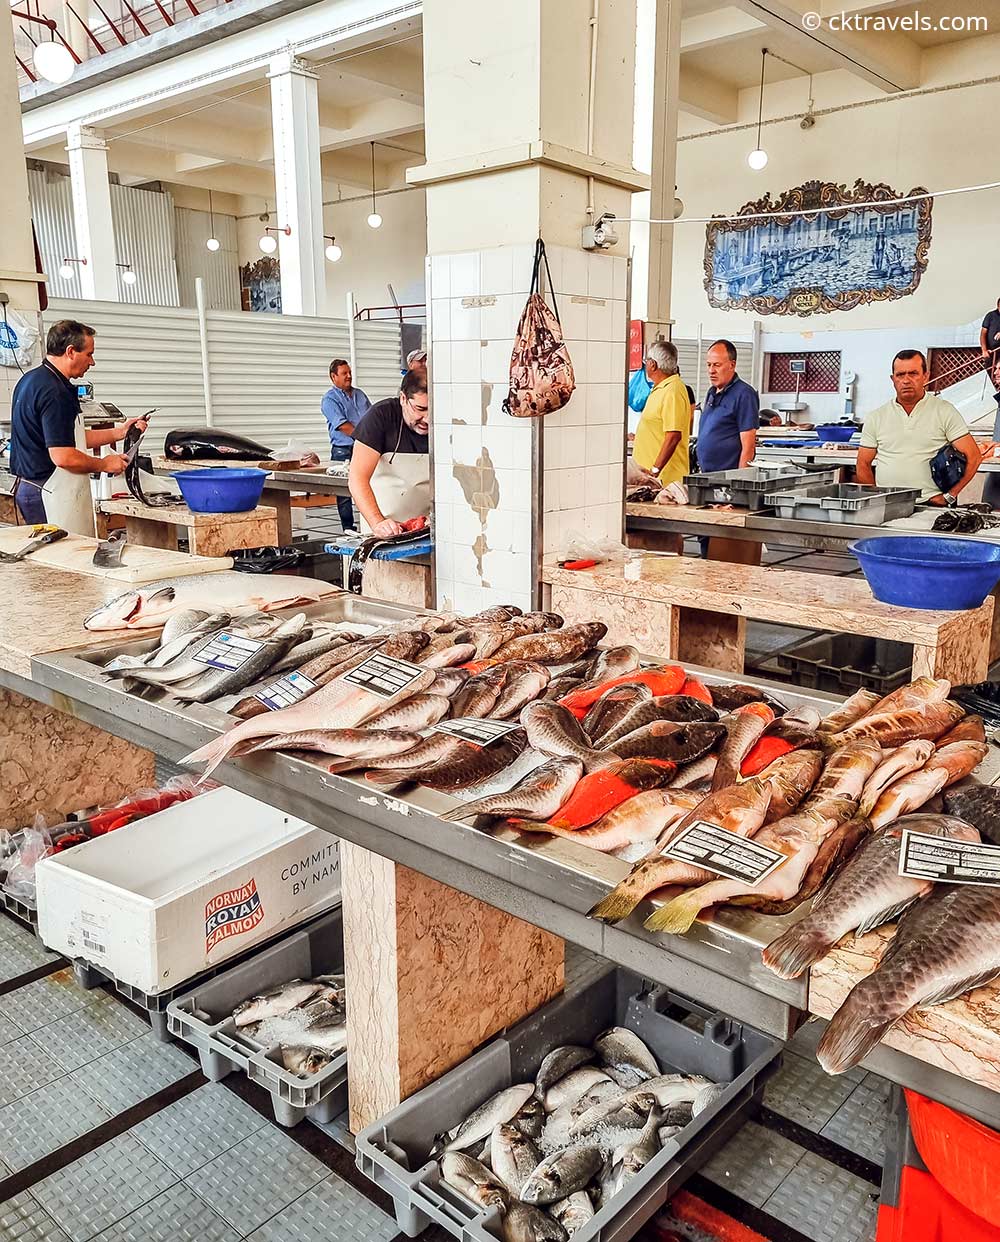 Funchal Madeira Mercado dos Lavradores fish market